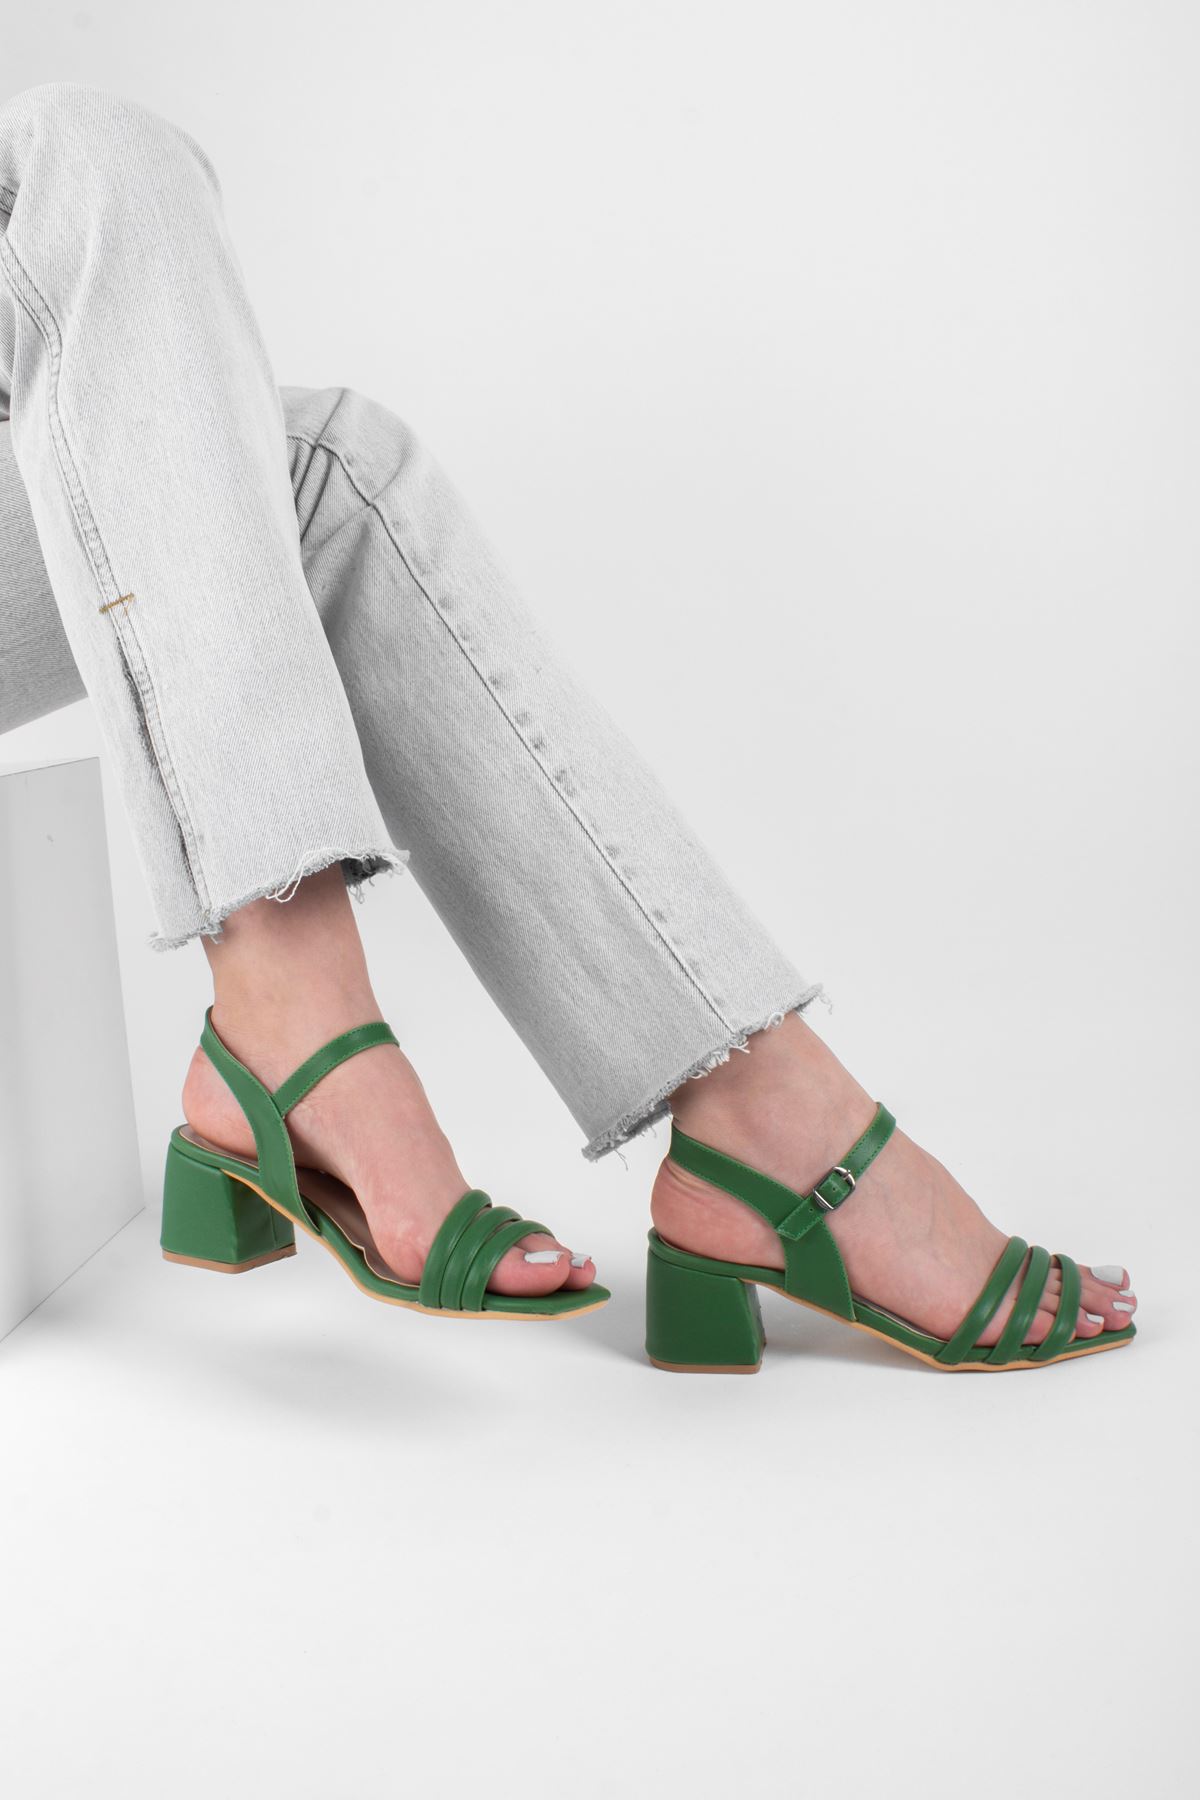 Kadın Biyeli Klasik Topuklu Ayakkabı-Yeşil